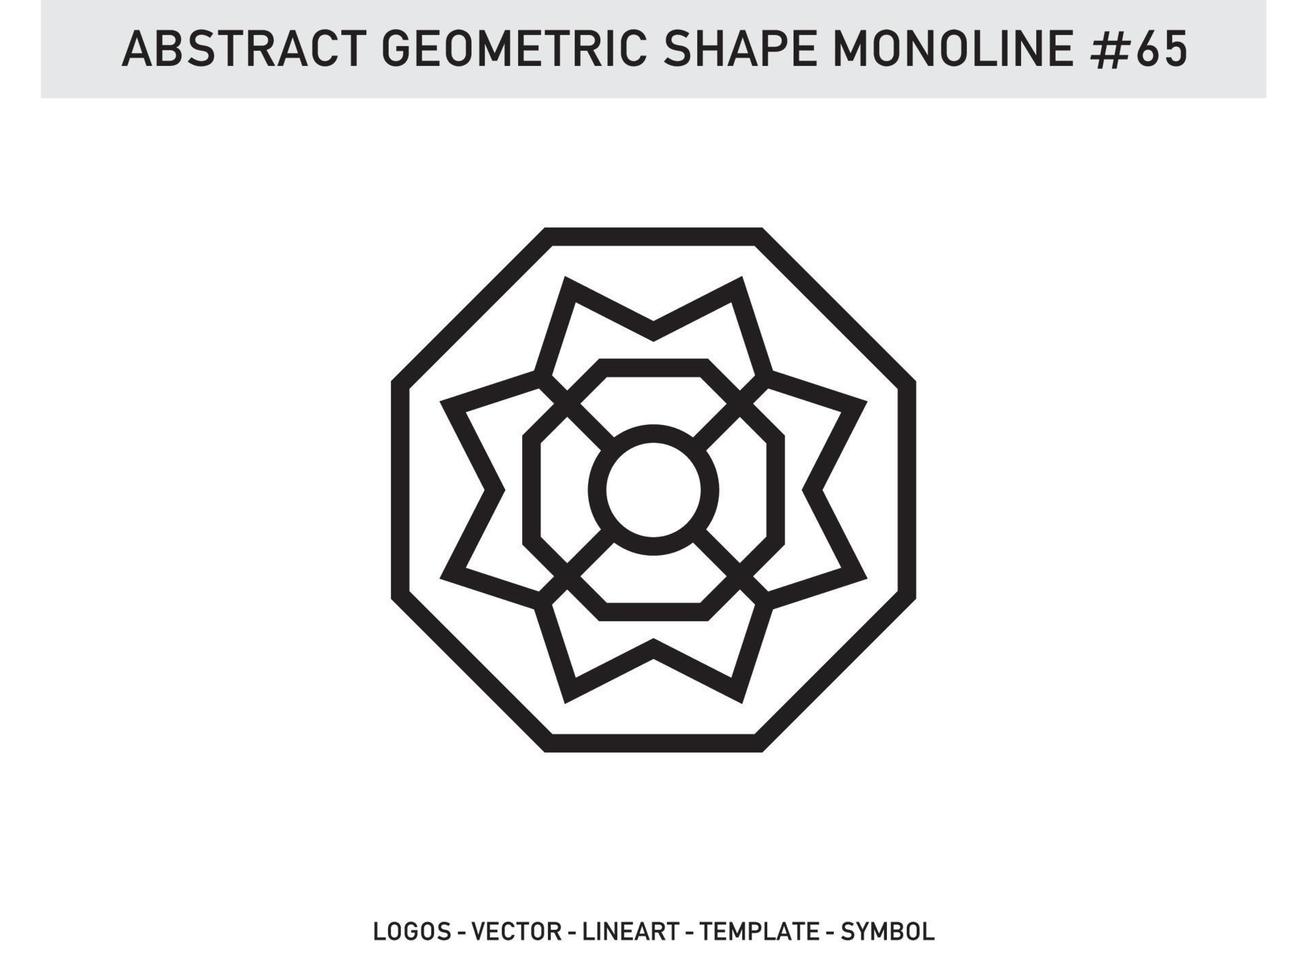 geometrische monoline lineart lijnvorm abstract gratis vector